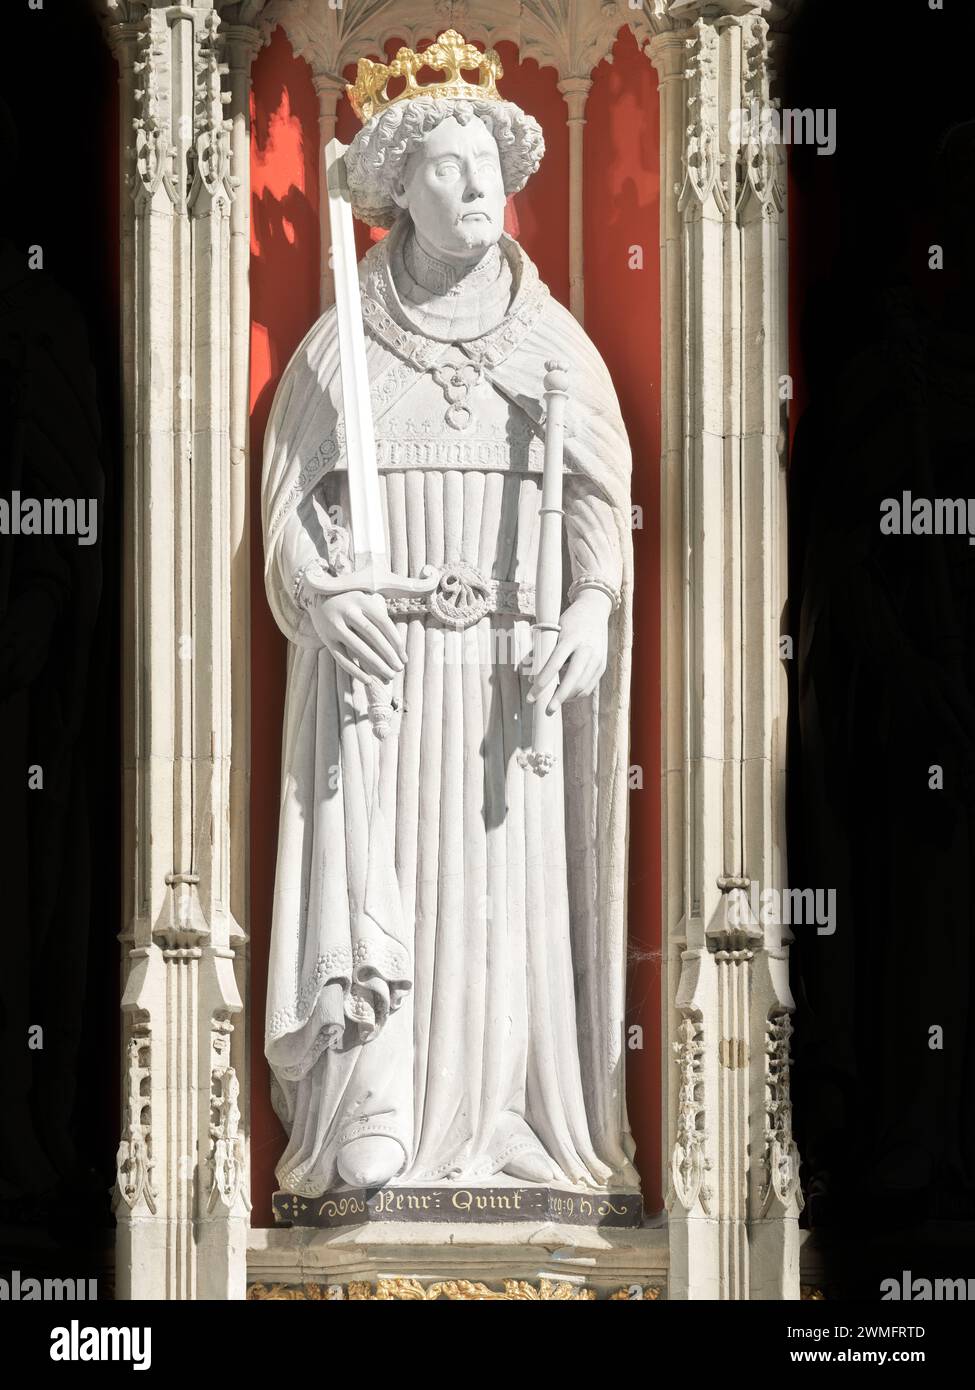 Statue eines mittelalterlichen englischen Königs, Heinrich V., auf der Leinwand im Münster (Kathedrale) in York, England. Stockfoto